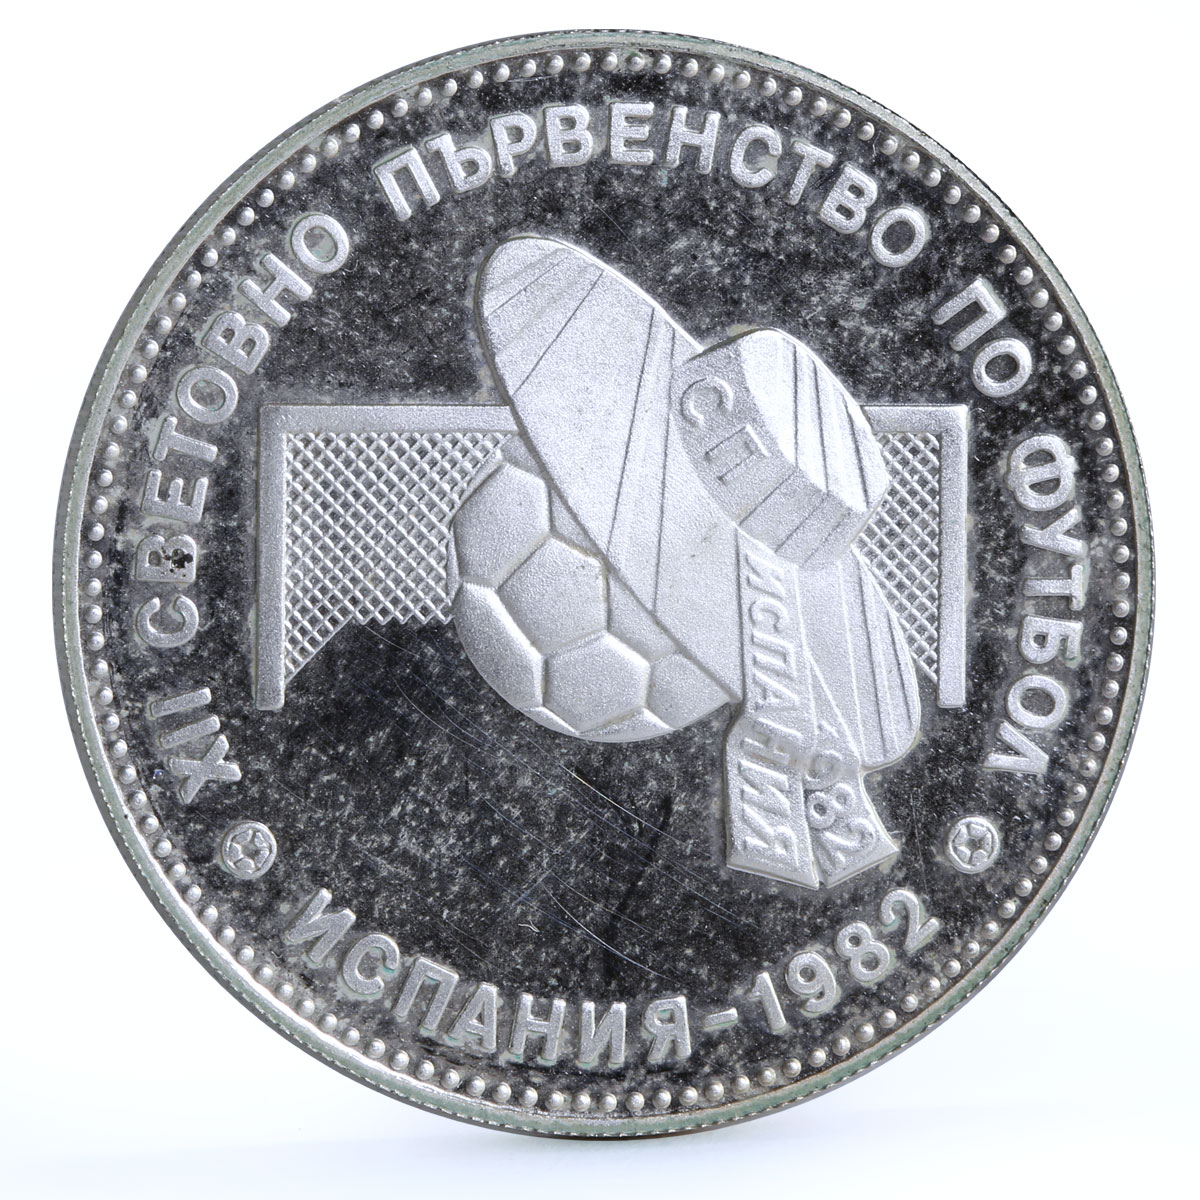 Bulgaria 10 leva Football World Cup in Spain Sombrero and Ball silver coin 1982